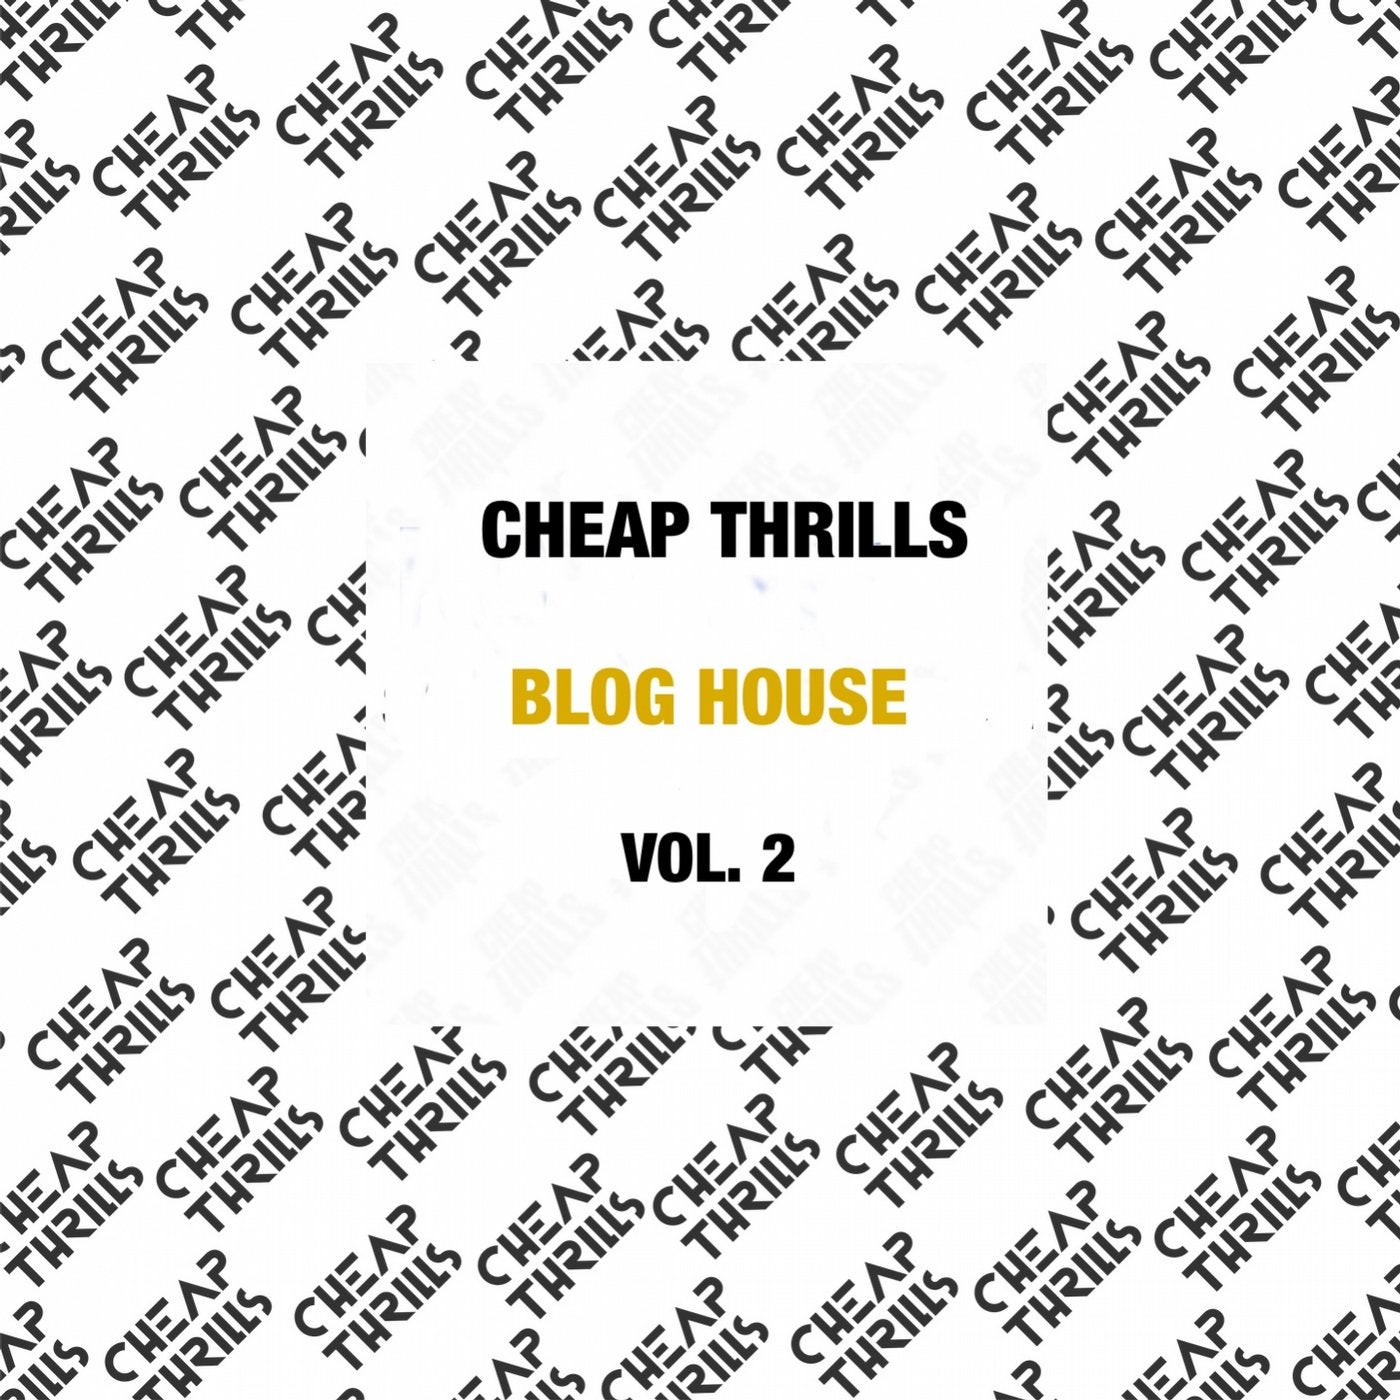 Blog House (Vol. 2)